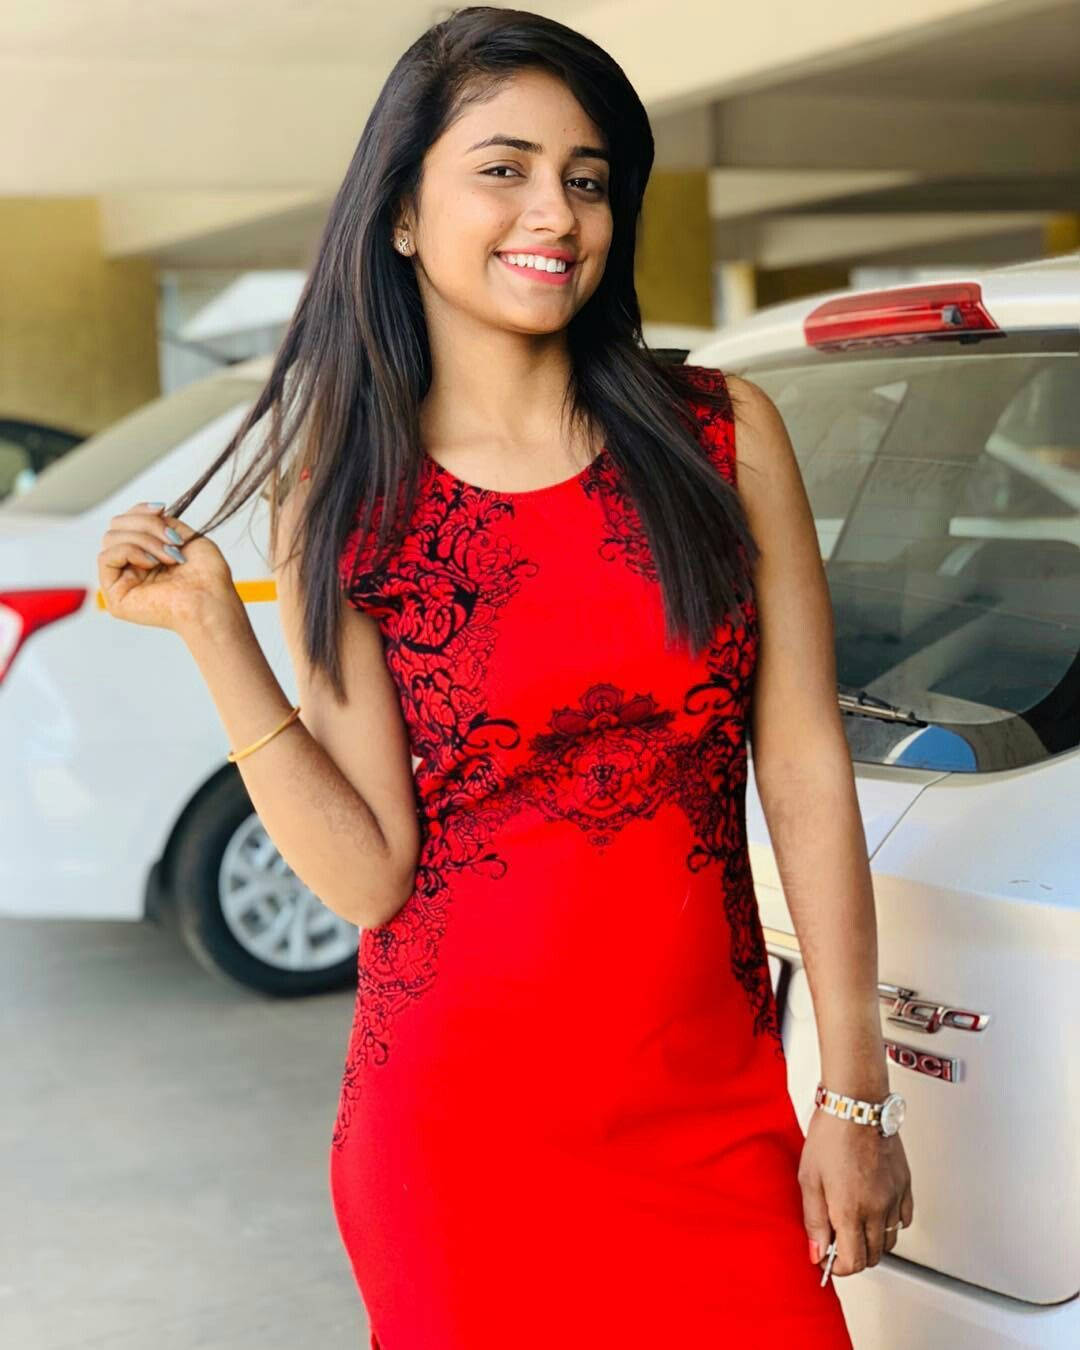 Nisha Guragain Wearing A Red Dress